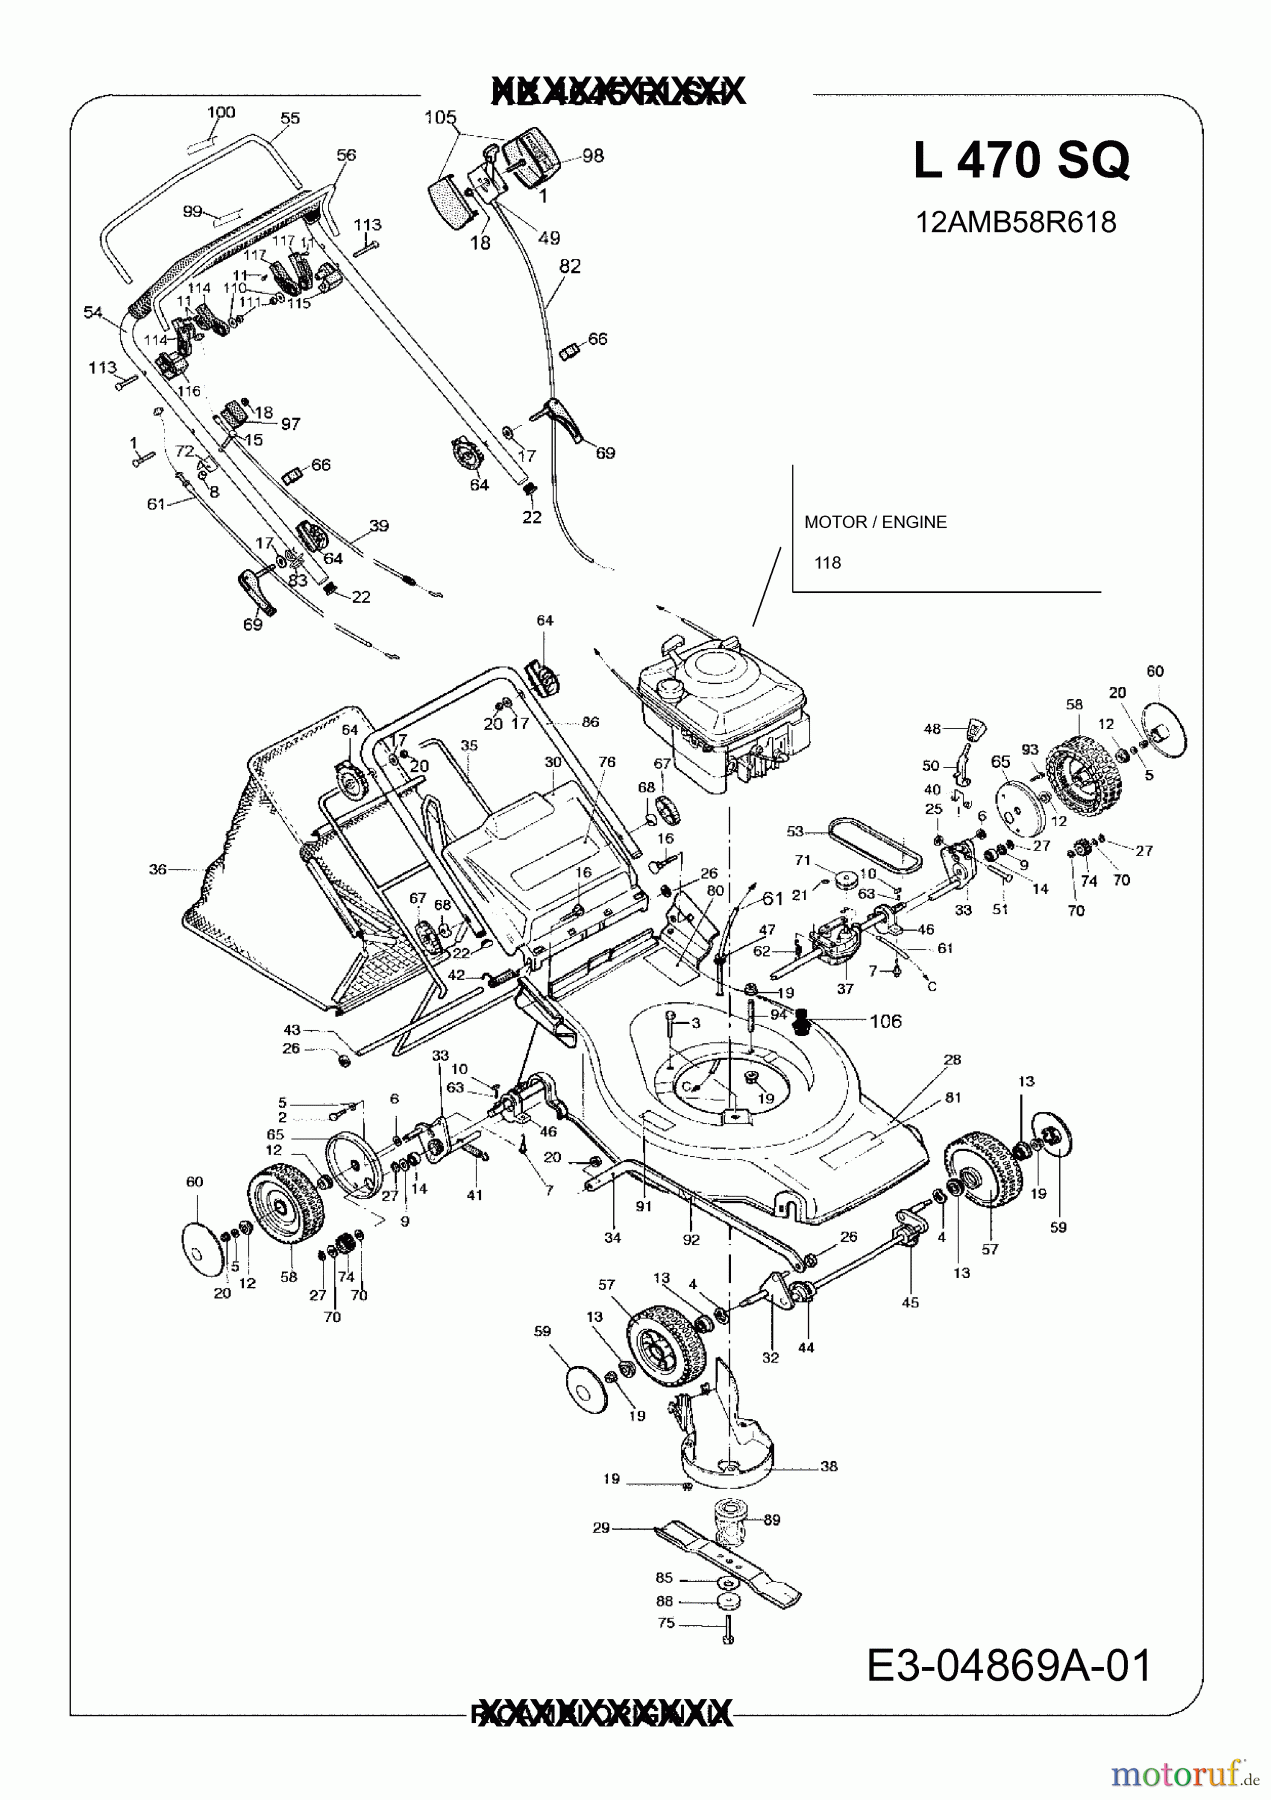  Juwel Motormäher mit Antrieb L 470 SQ 12AMB58R618  (2009) Grundgerät